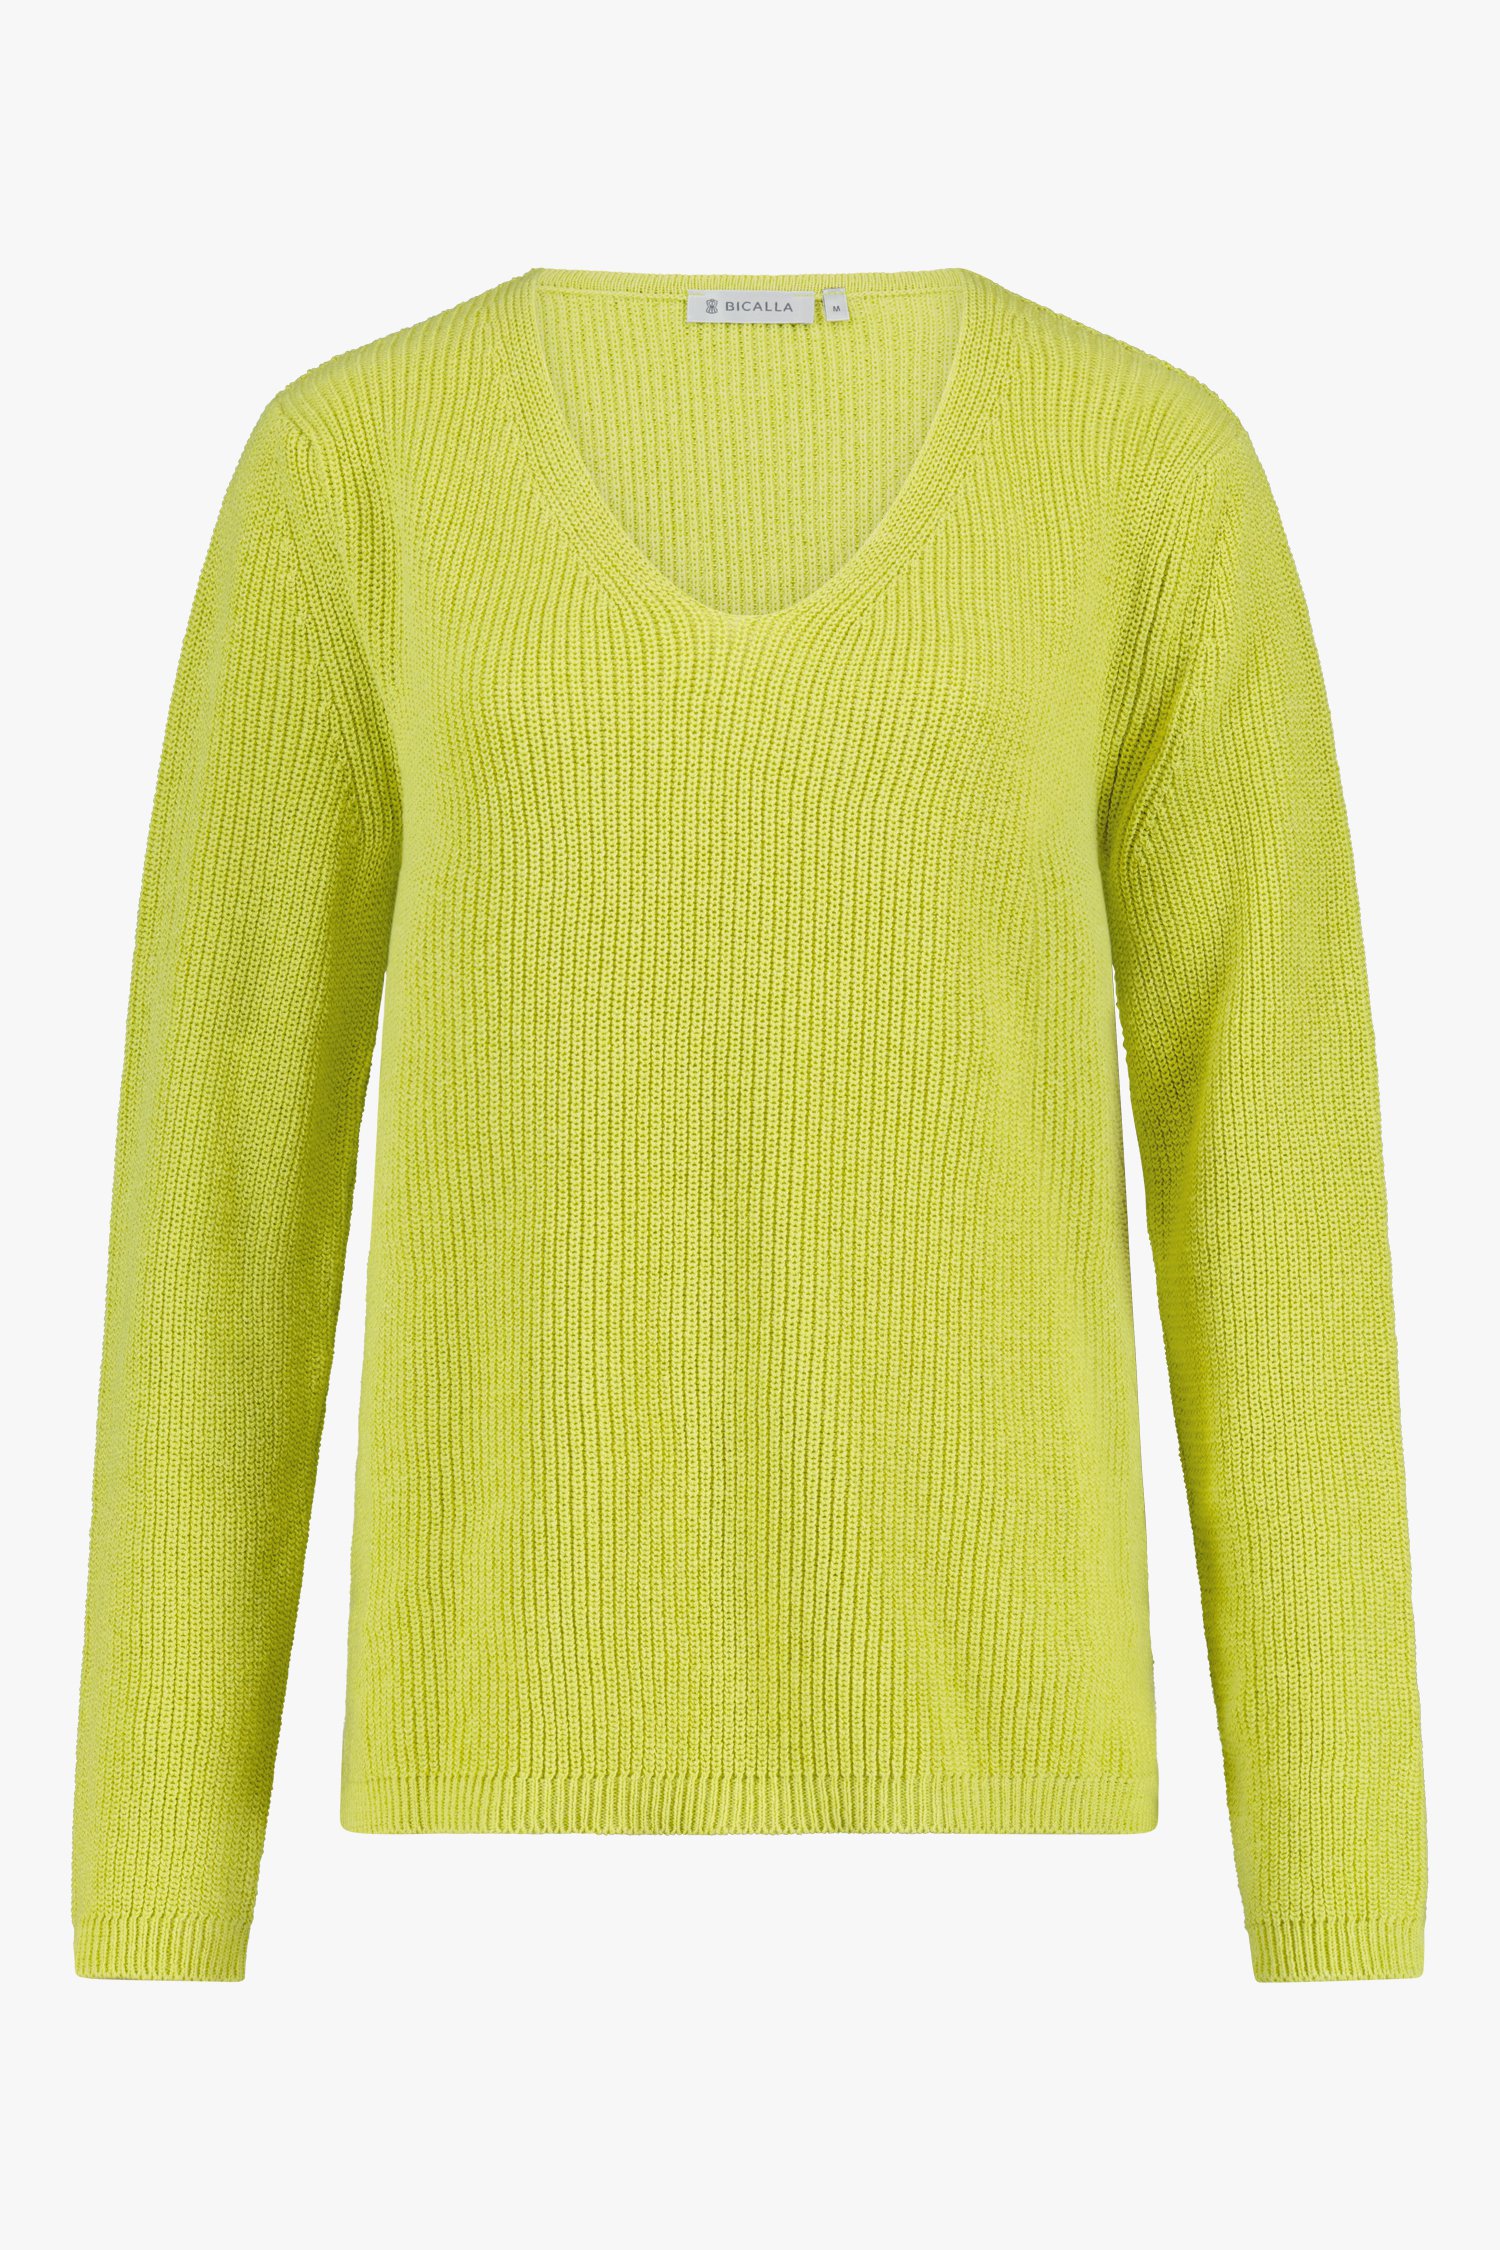 Groengele trui met V-hals van Bicalla voor Dames